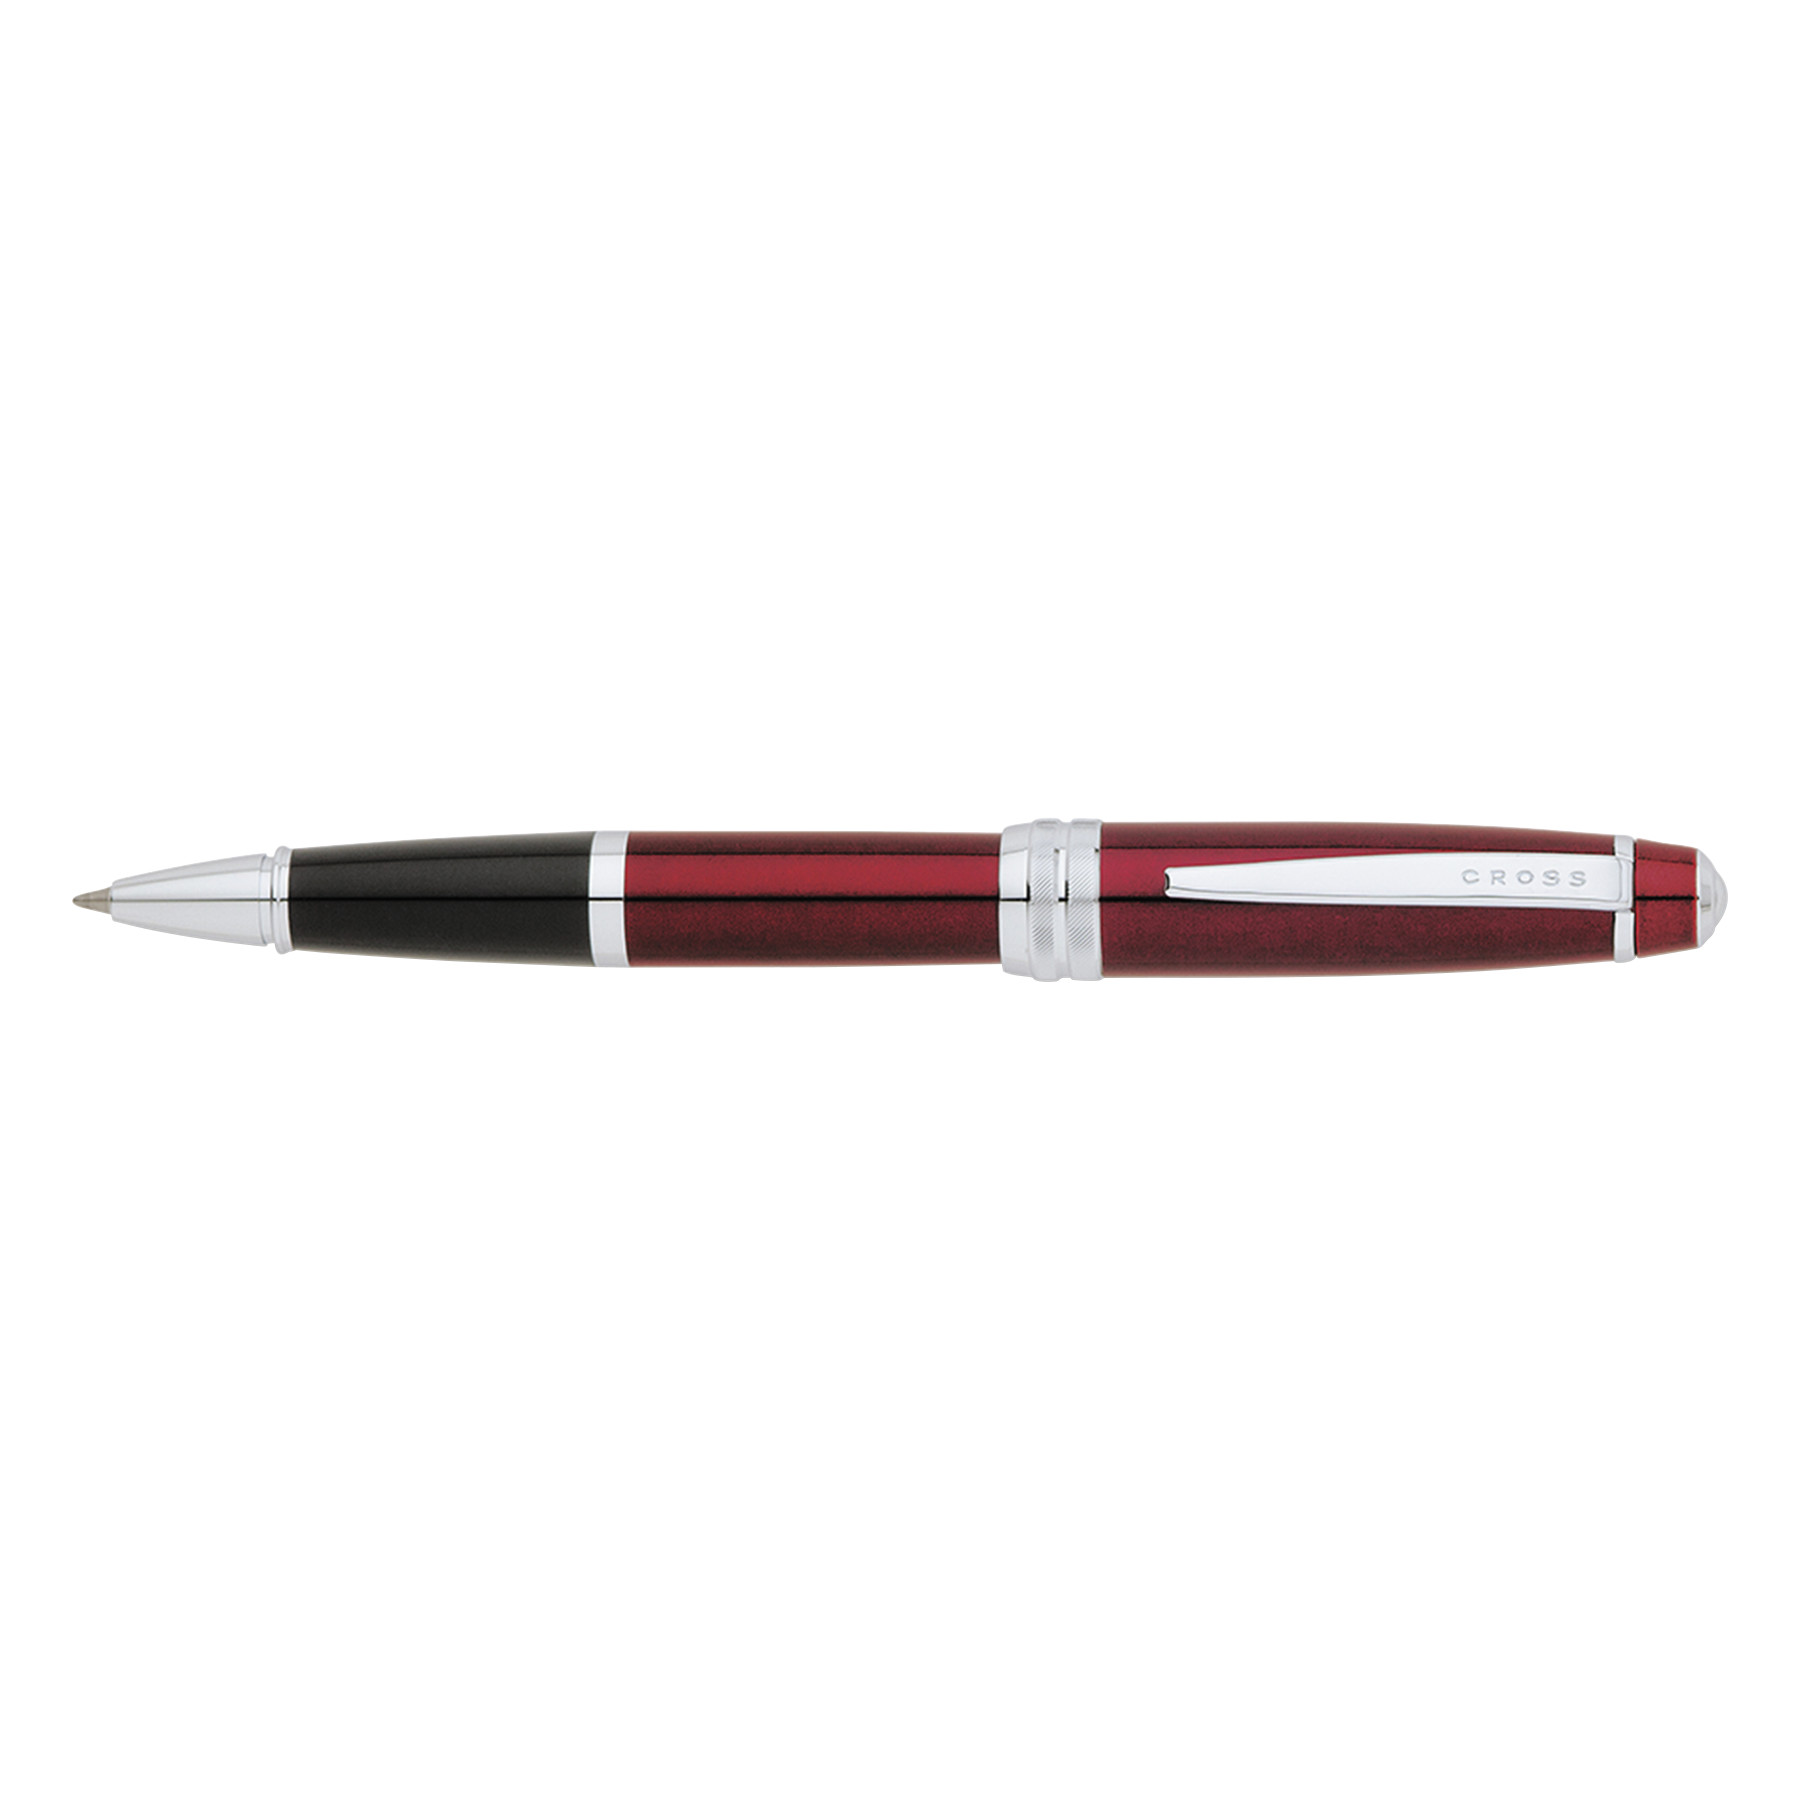 Bailey Rolling Ball Pen, Black Ink, Red Barrel, Medium